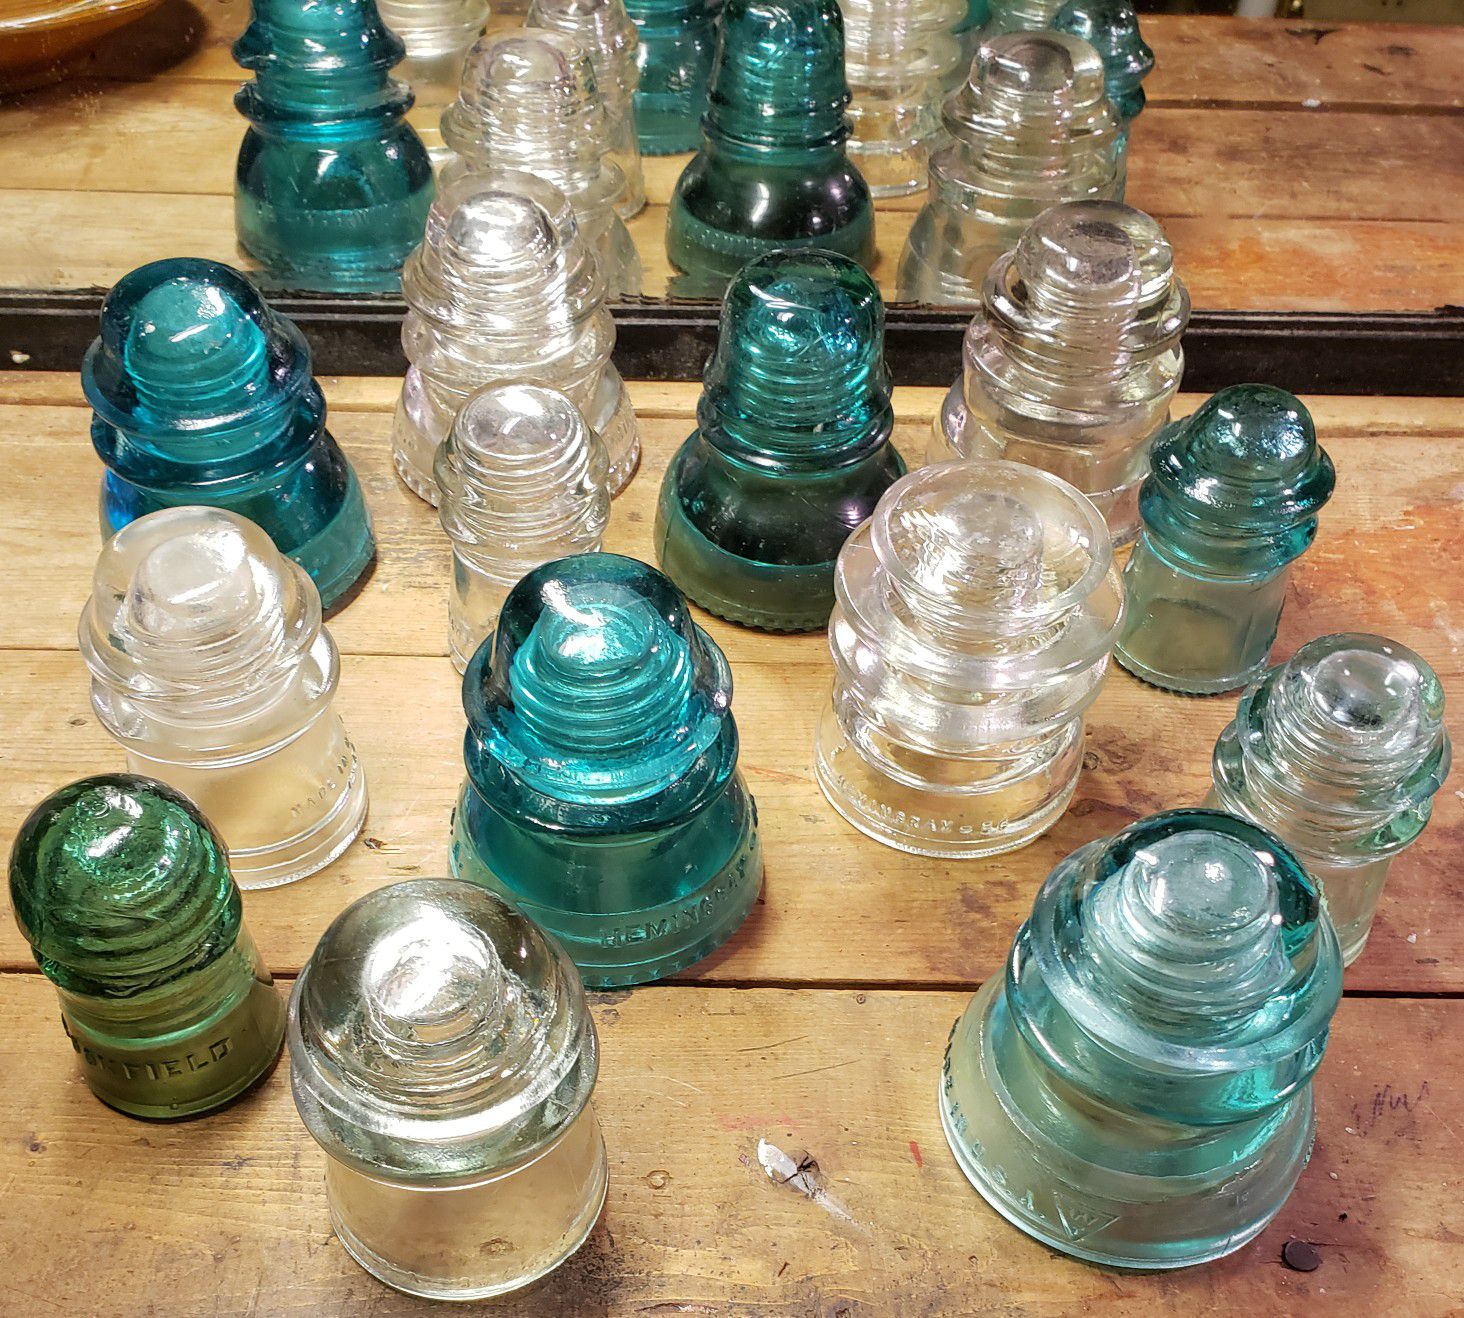 14 antique glass insulators